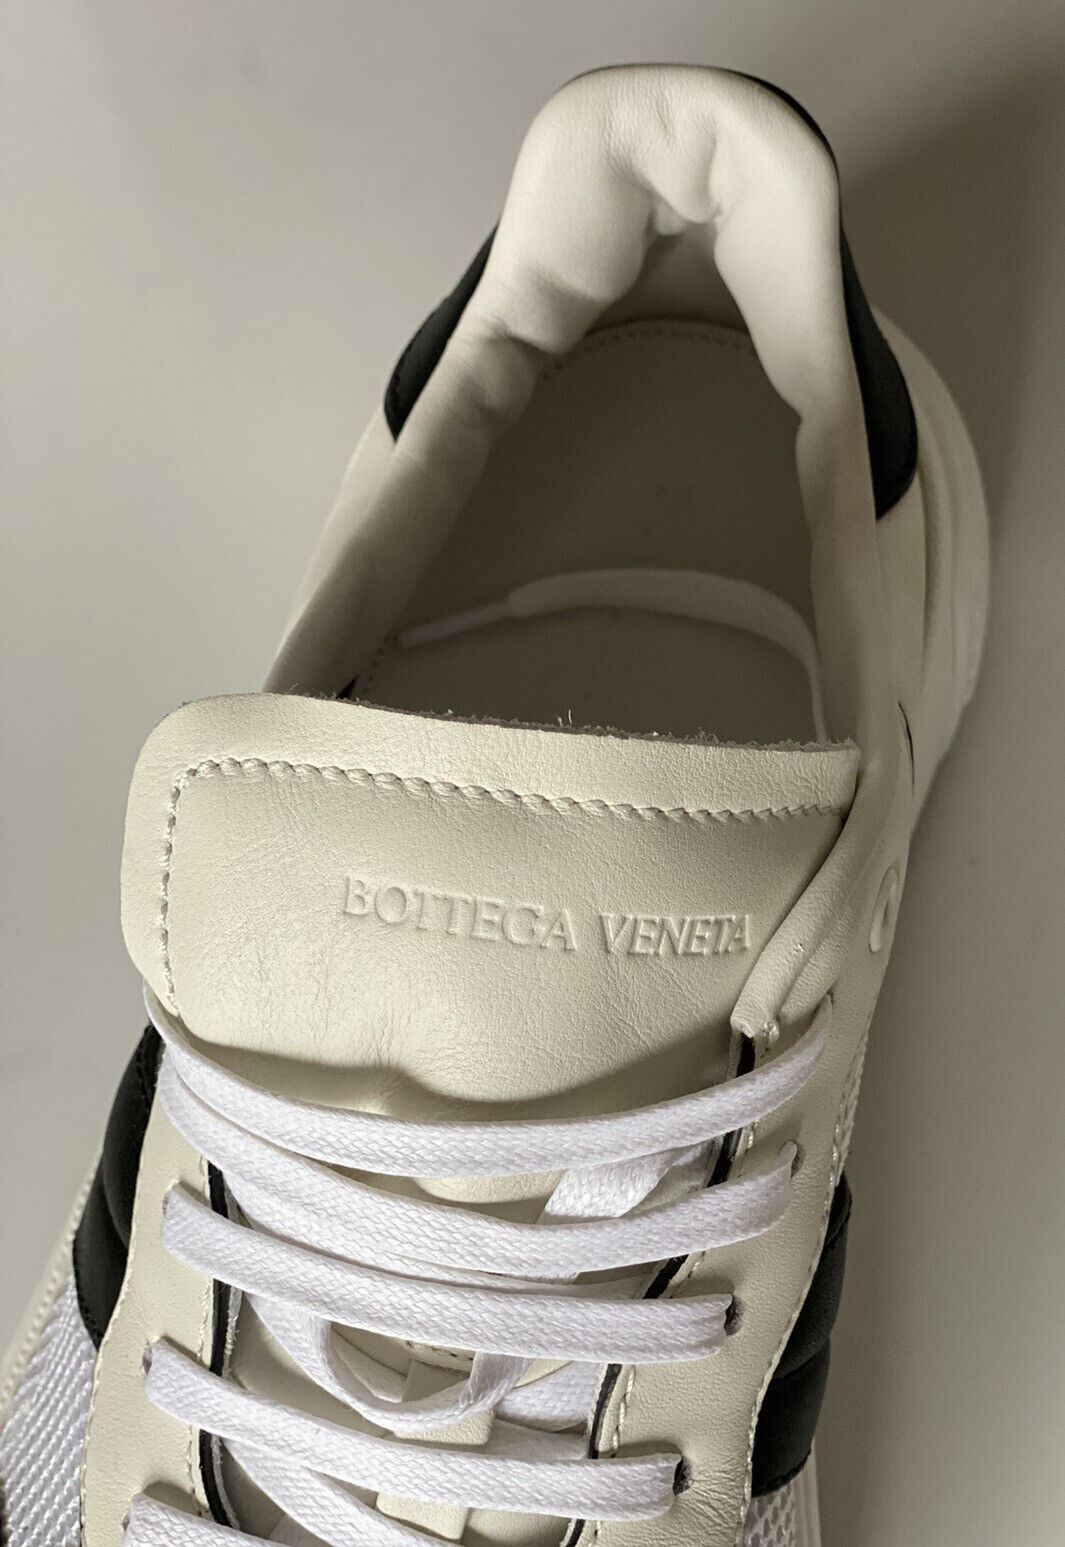 Мужские кроссовки из кожи и сетки Bottega Veneta, белые/черные, 790 долларов США, 12, США 565646